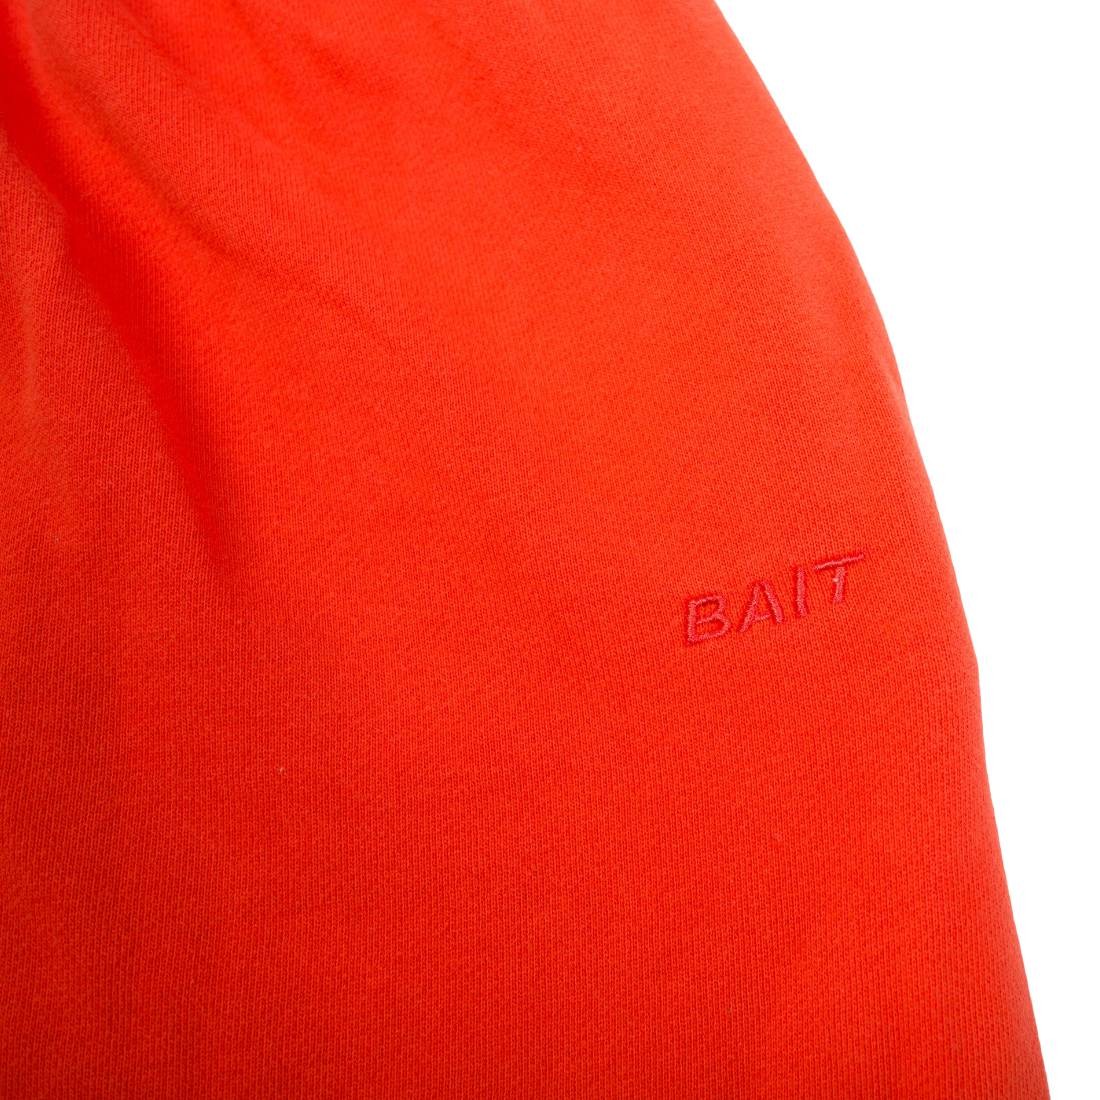 BAIT Men Premium Core Sweatpants orange